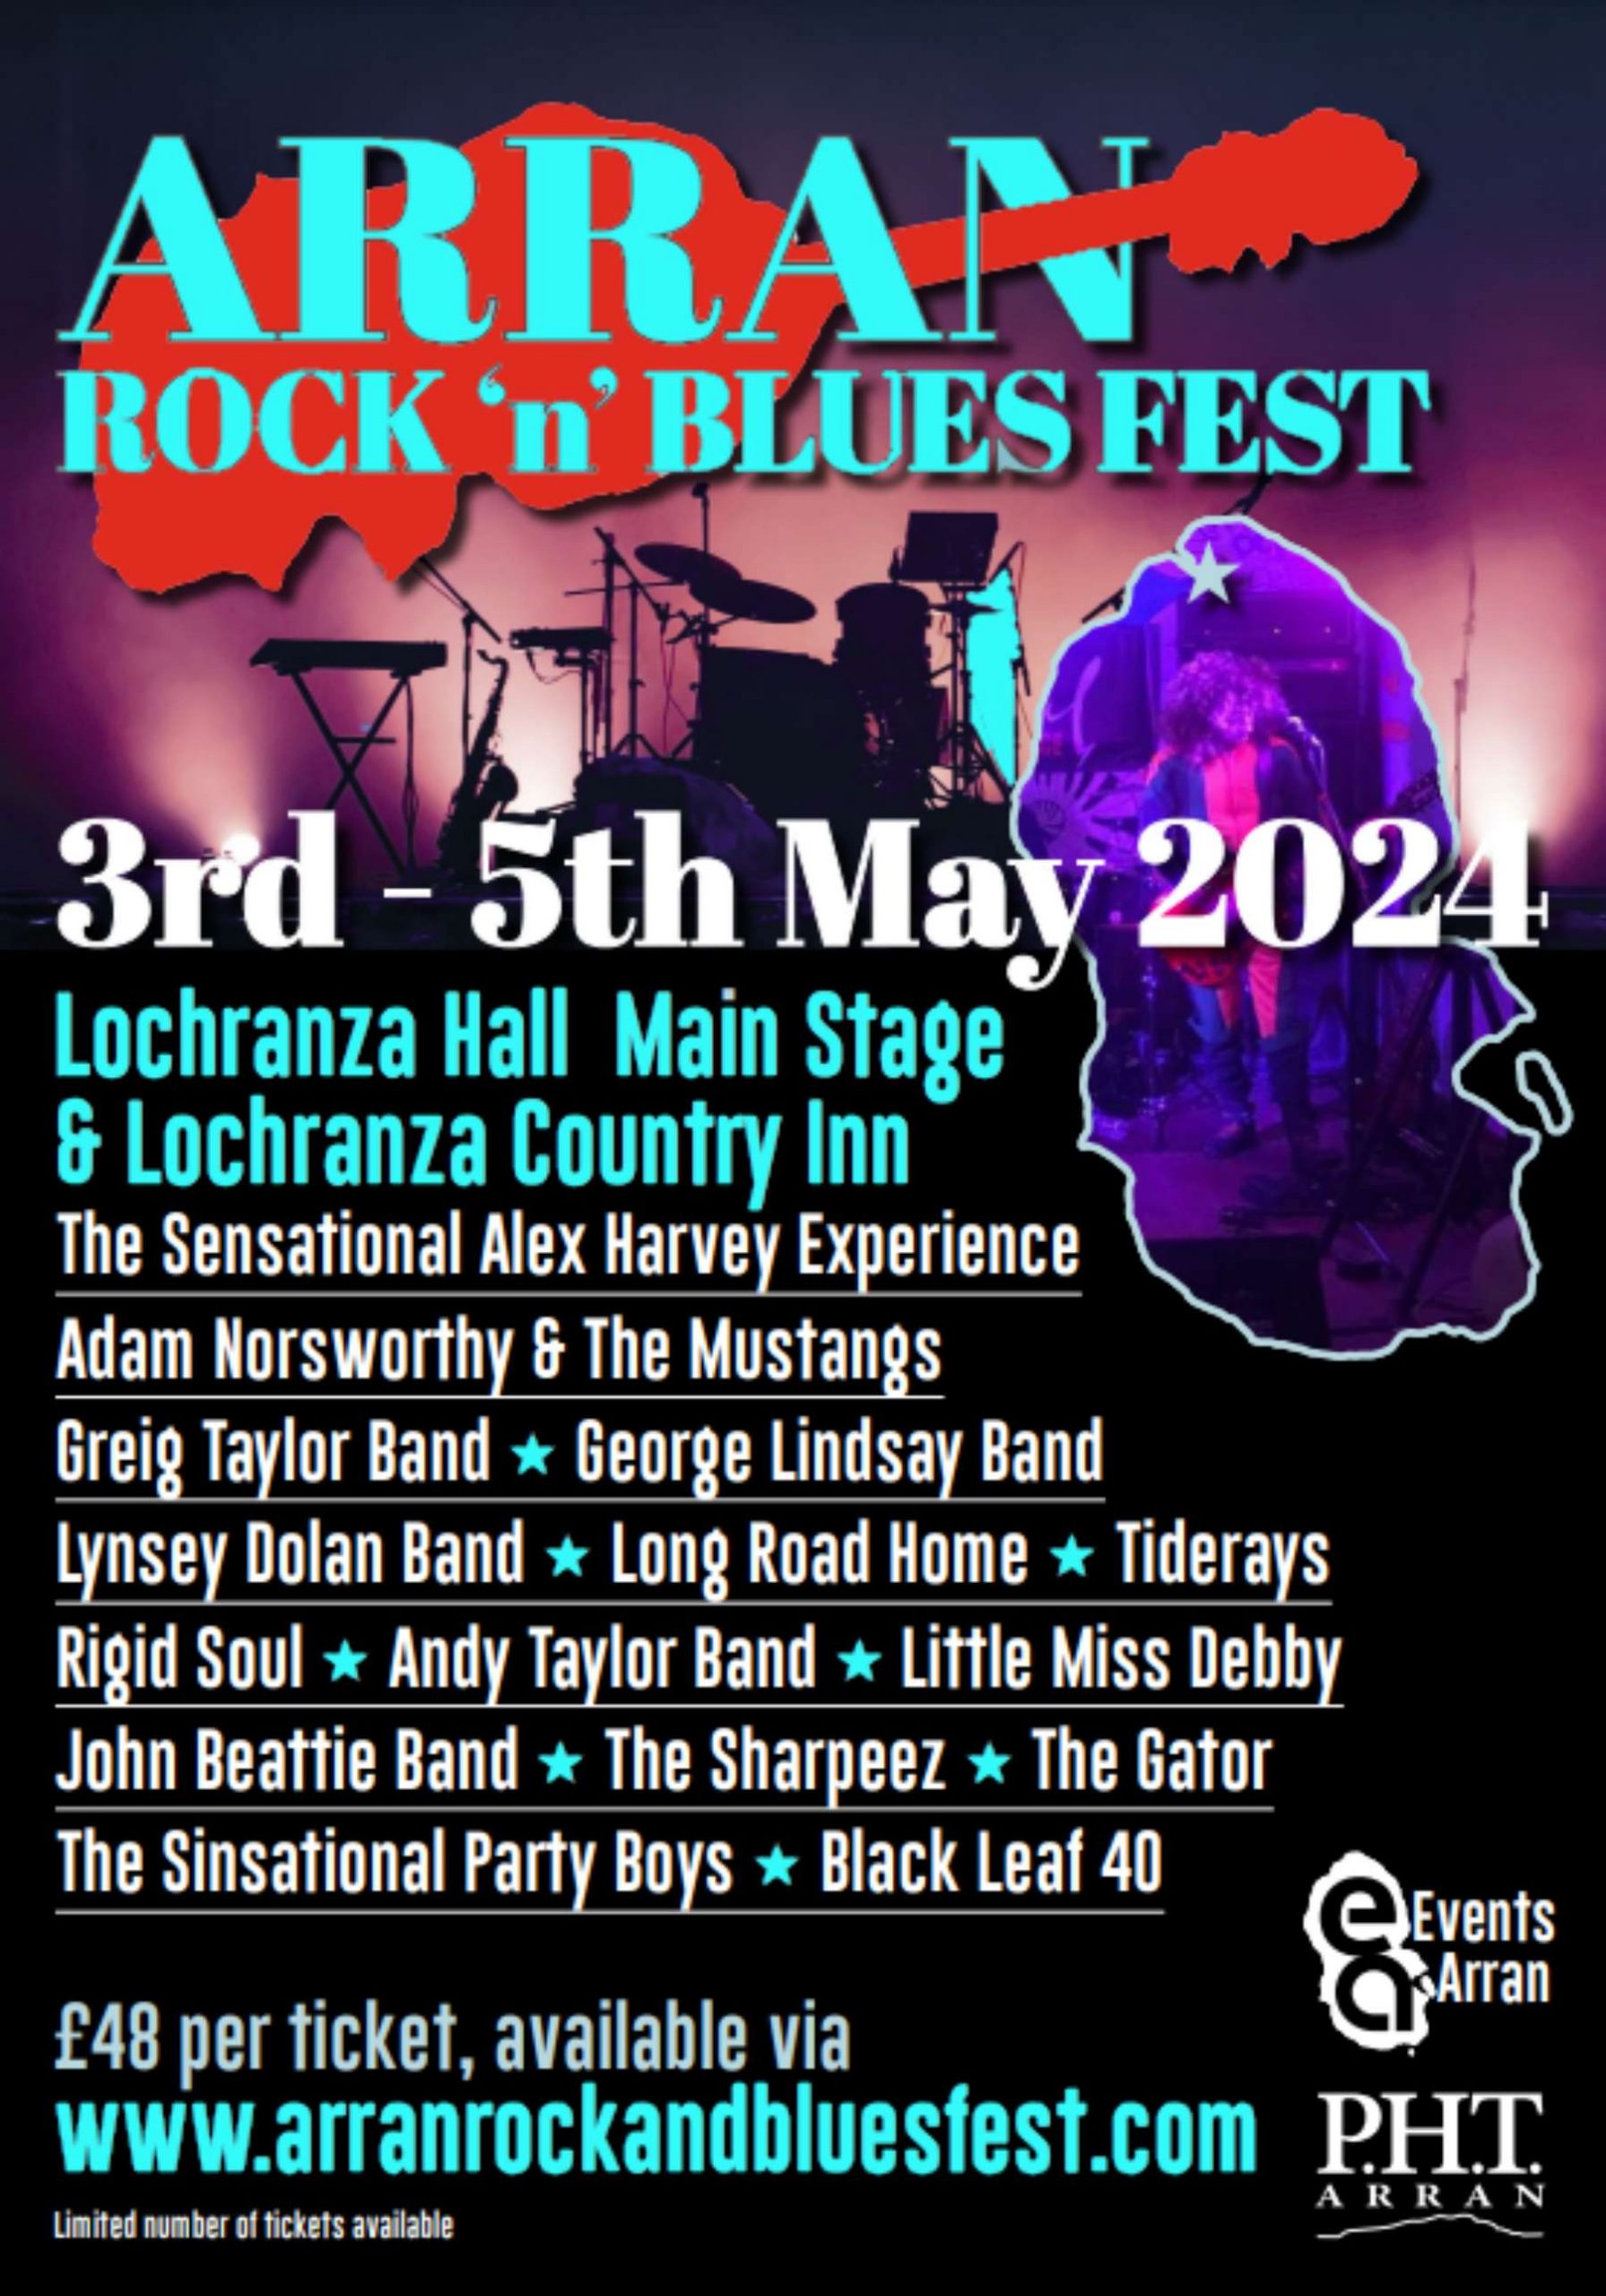 Arran Rock N Blues Fest 2024 (2)